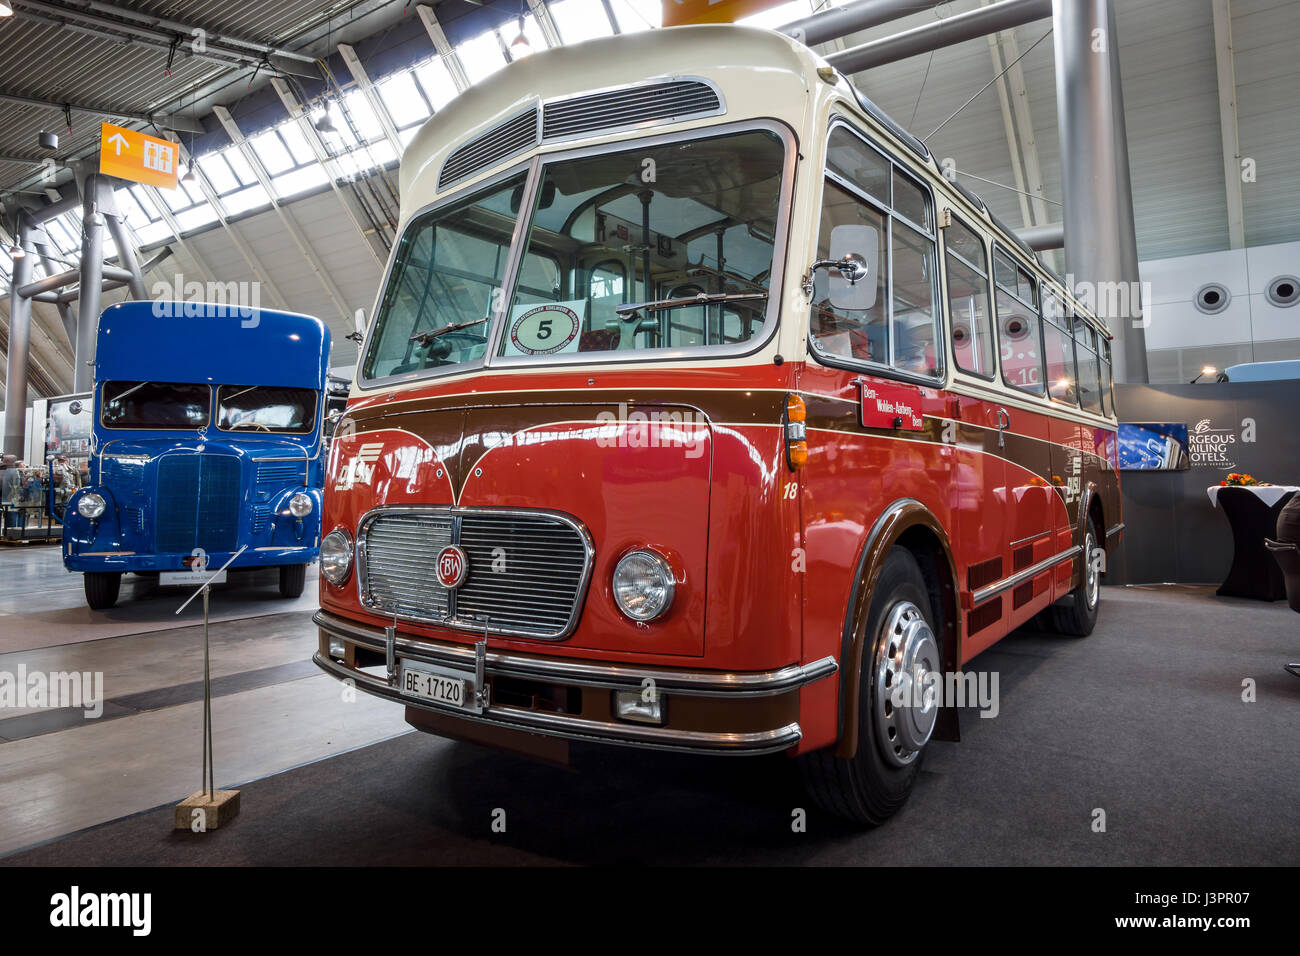 STUTTGART, Alemania - Marzo 03, 2017: Bus F.B.W. (Franz Brozincevic Wetzikon) PC35-U Alpenwagen III-U, 1963. Europa la mayor exposición de coches clásicos clásicos 'retro' Foto de stock